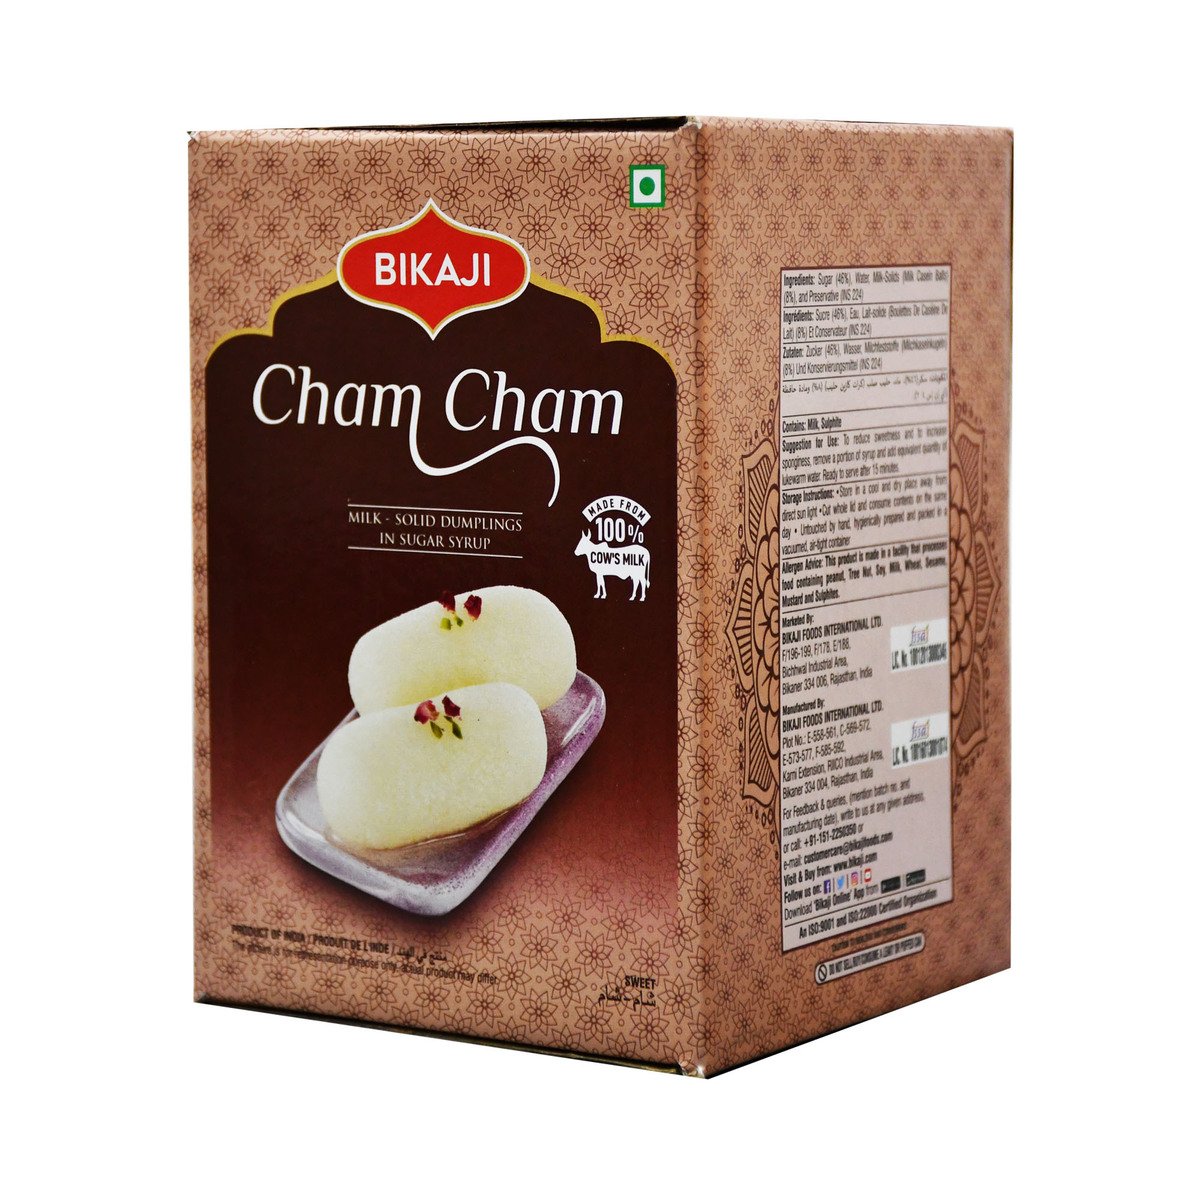 Bikaji Cham Cham 1.25kg